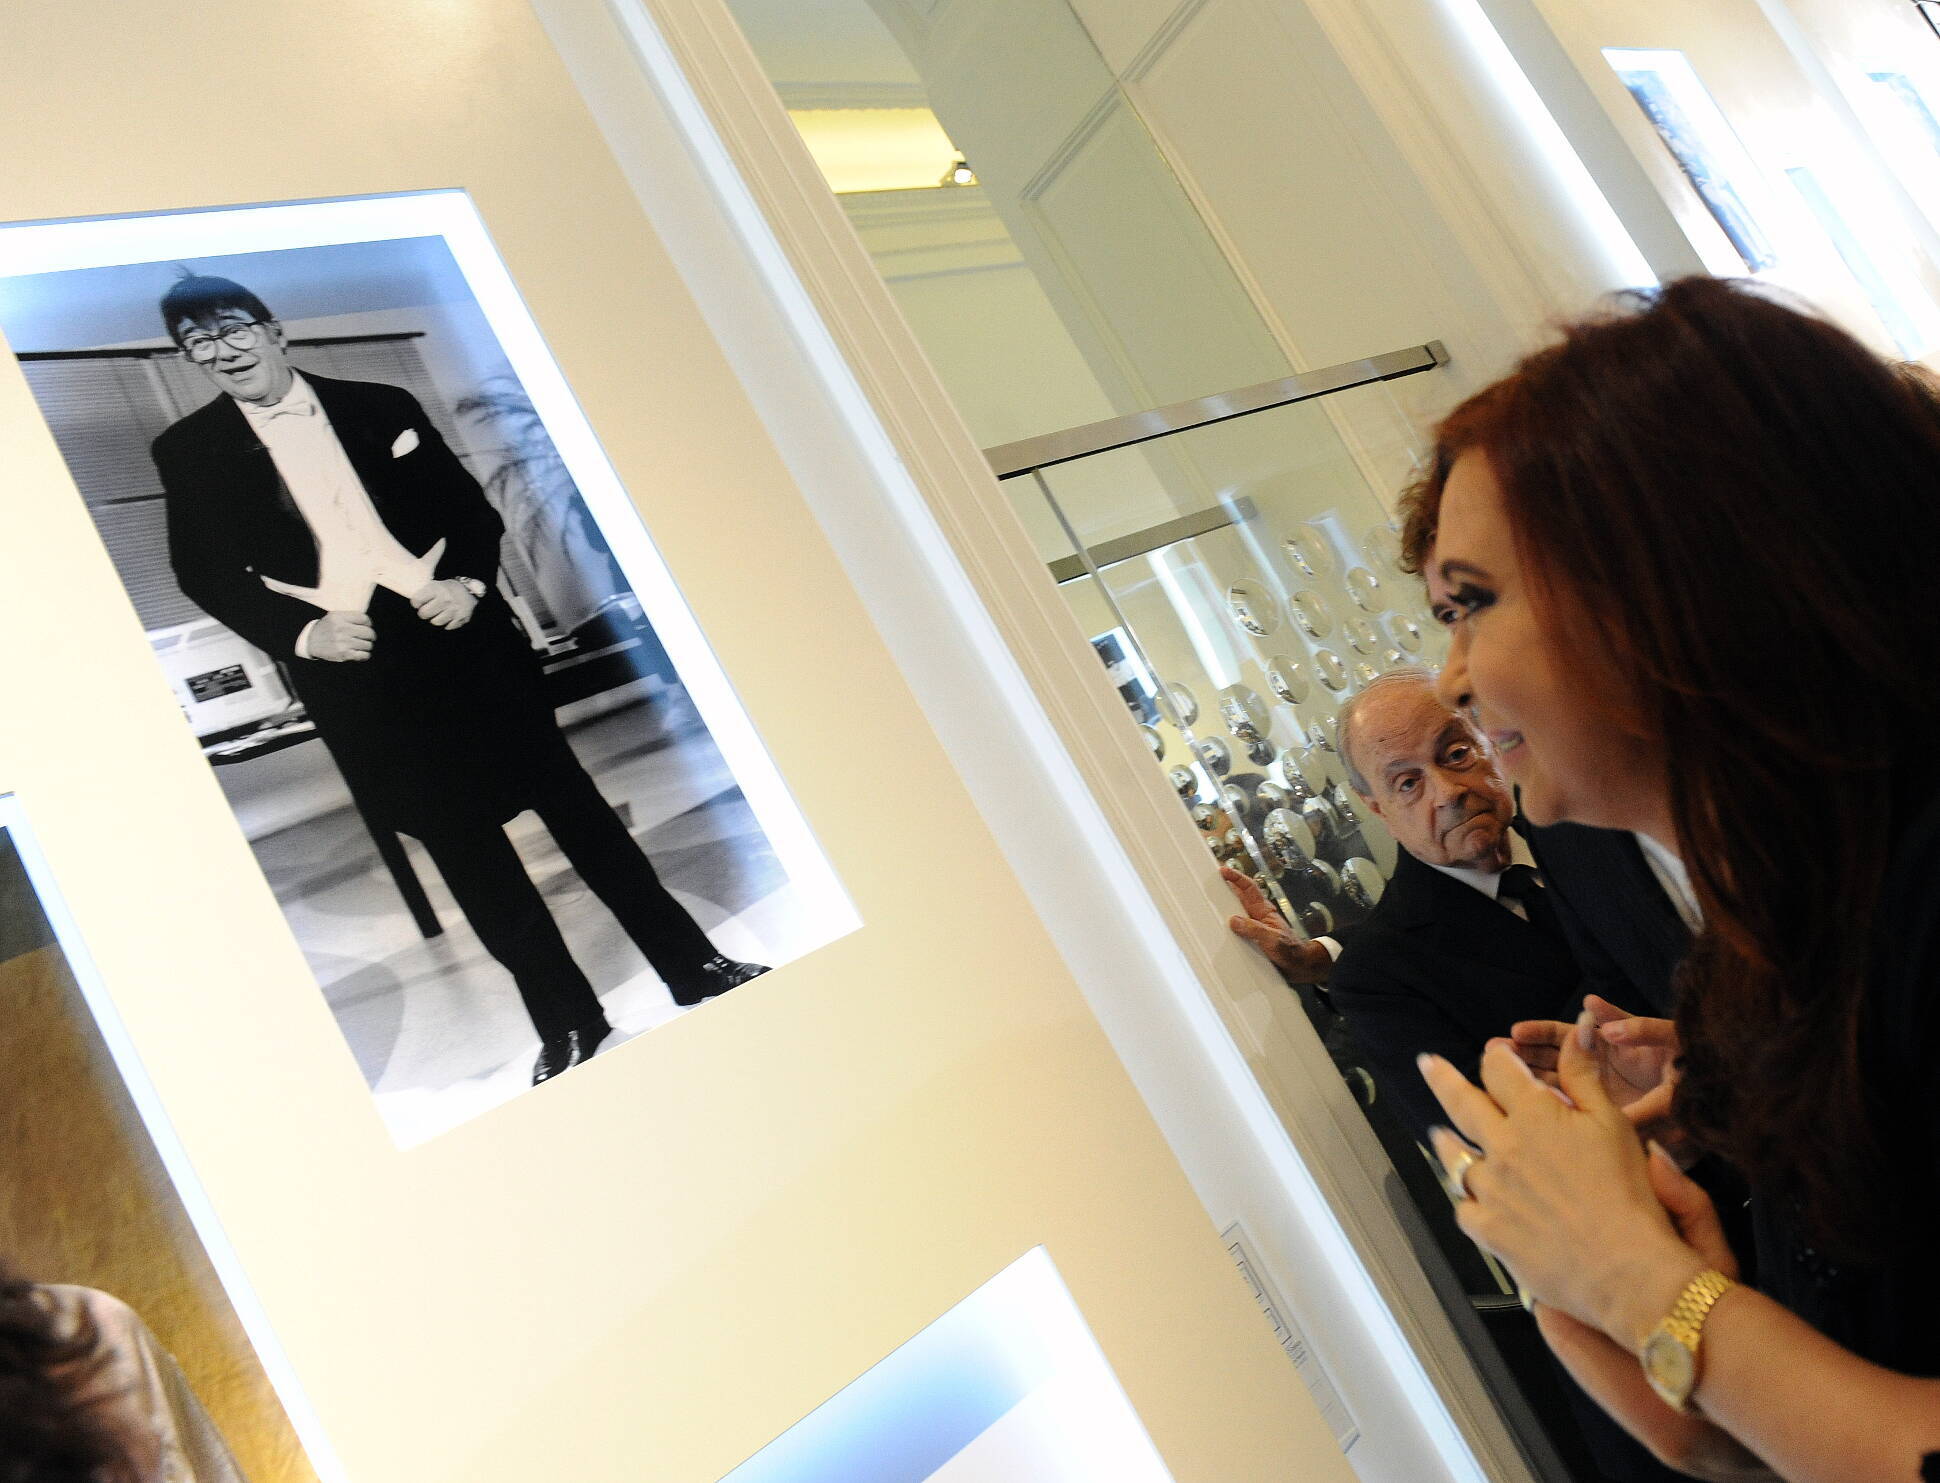 “Acá están representados los amores de los argentinos”, afirmó Cristina Fernández al inaugurar la Galería de los Ídolos Populares